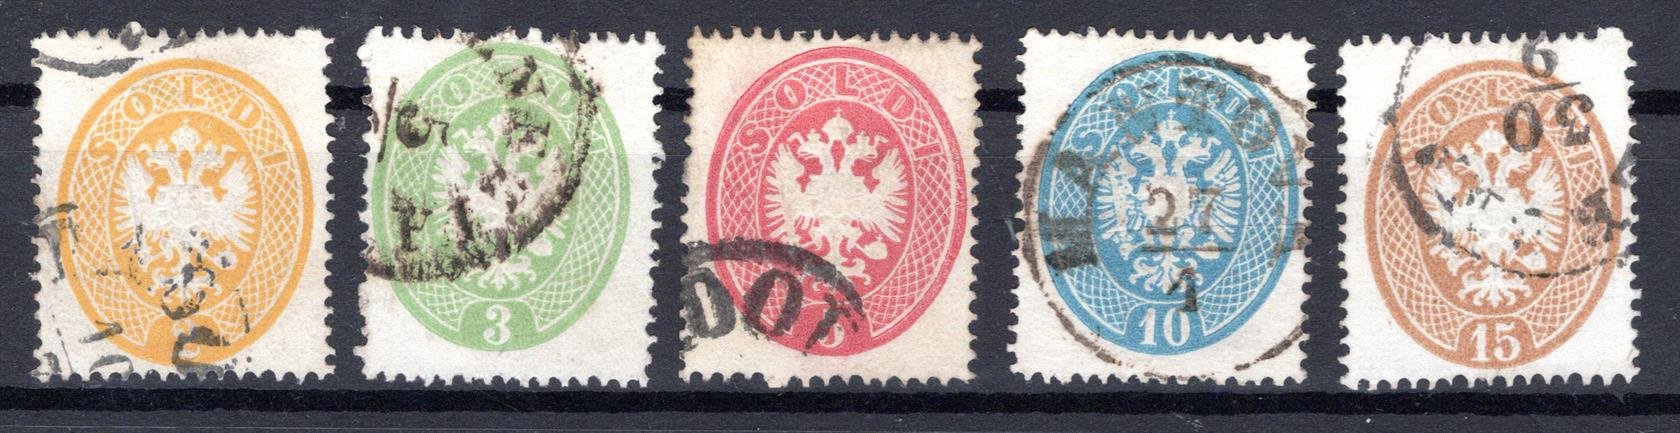 Rakousko - Lombardsko, Mi. 14 - 18, znak, jemné zoubkování,  HZ 14, kat. 400,-